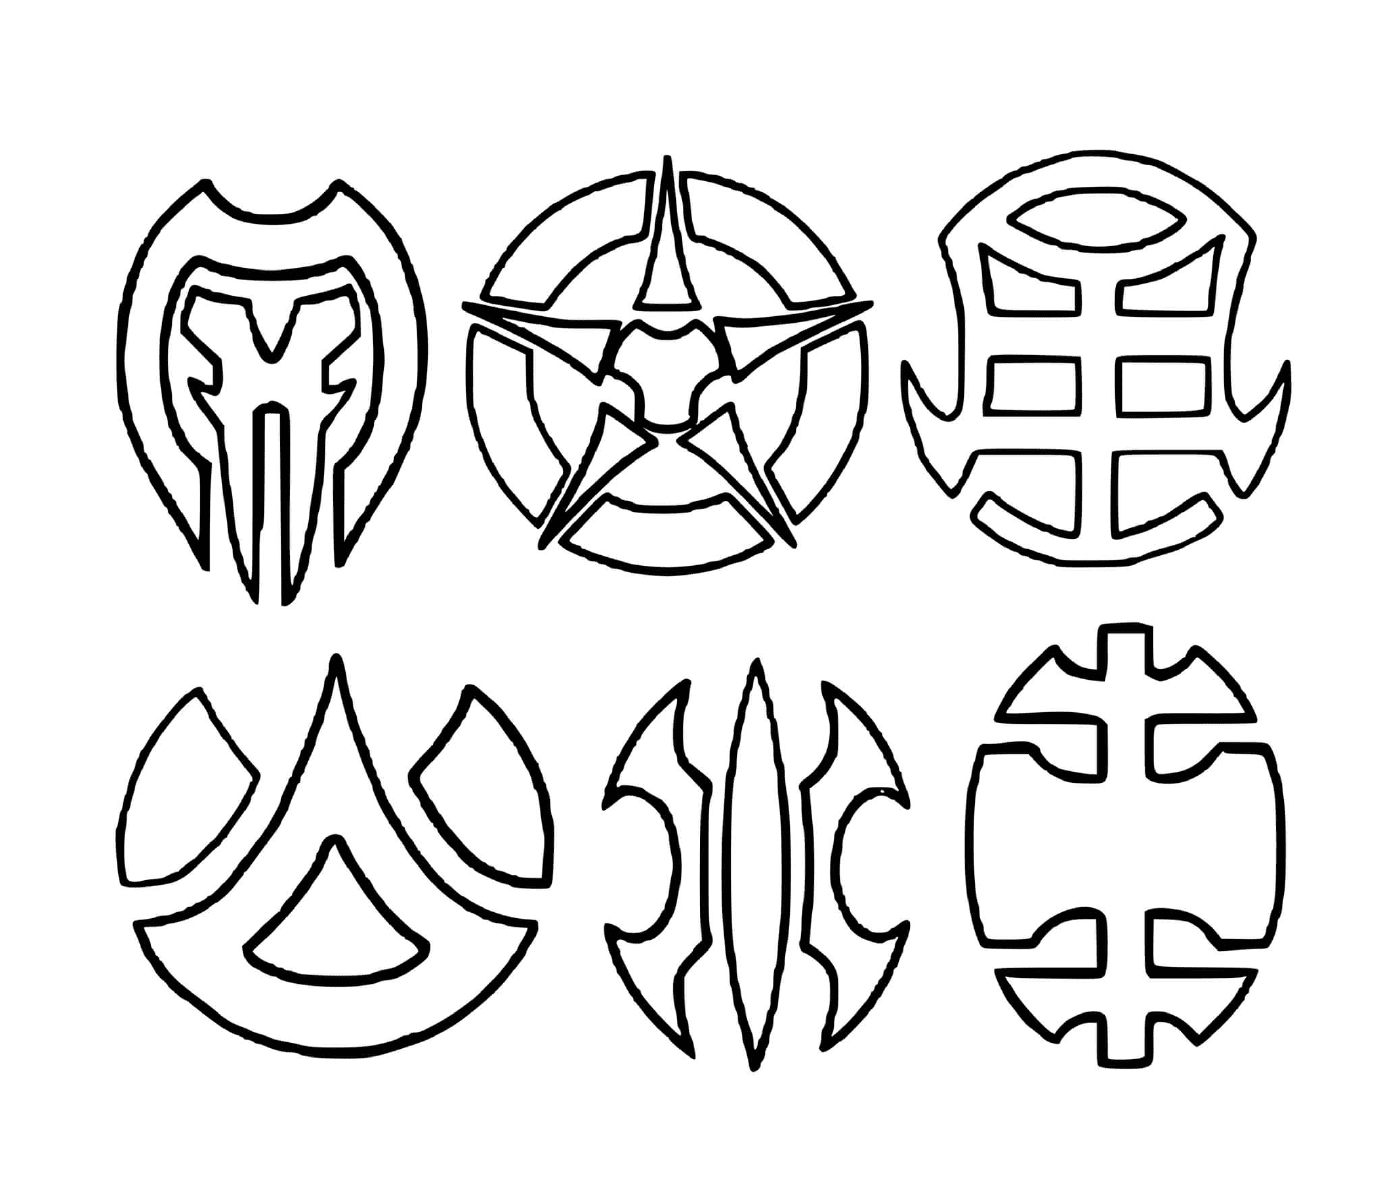  un conjunto de seis símbolos dibujados 